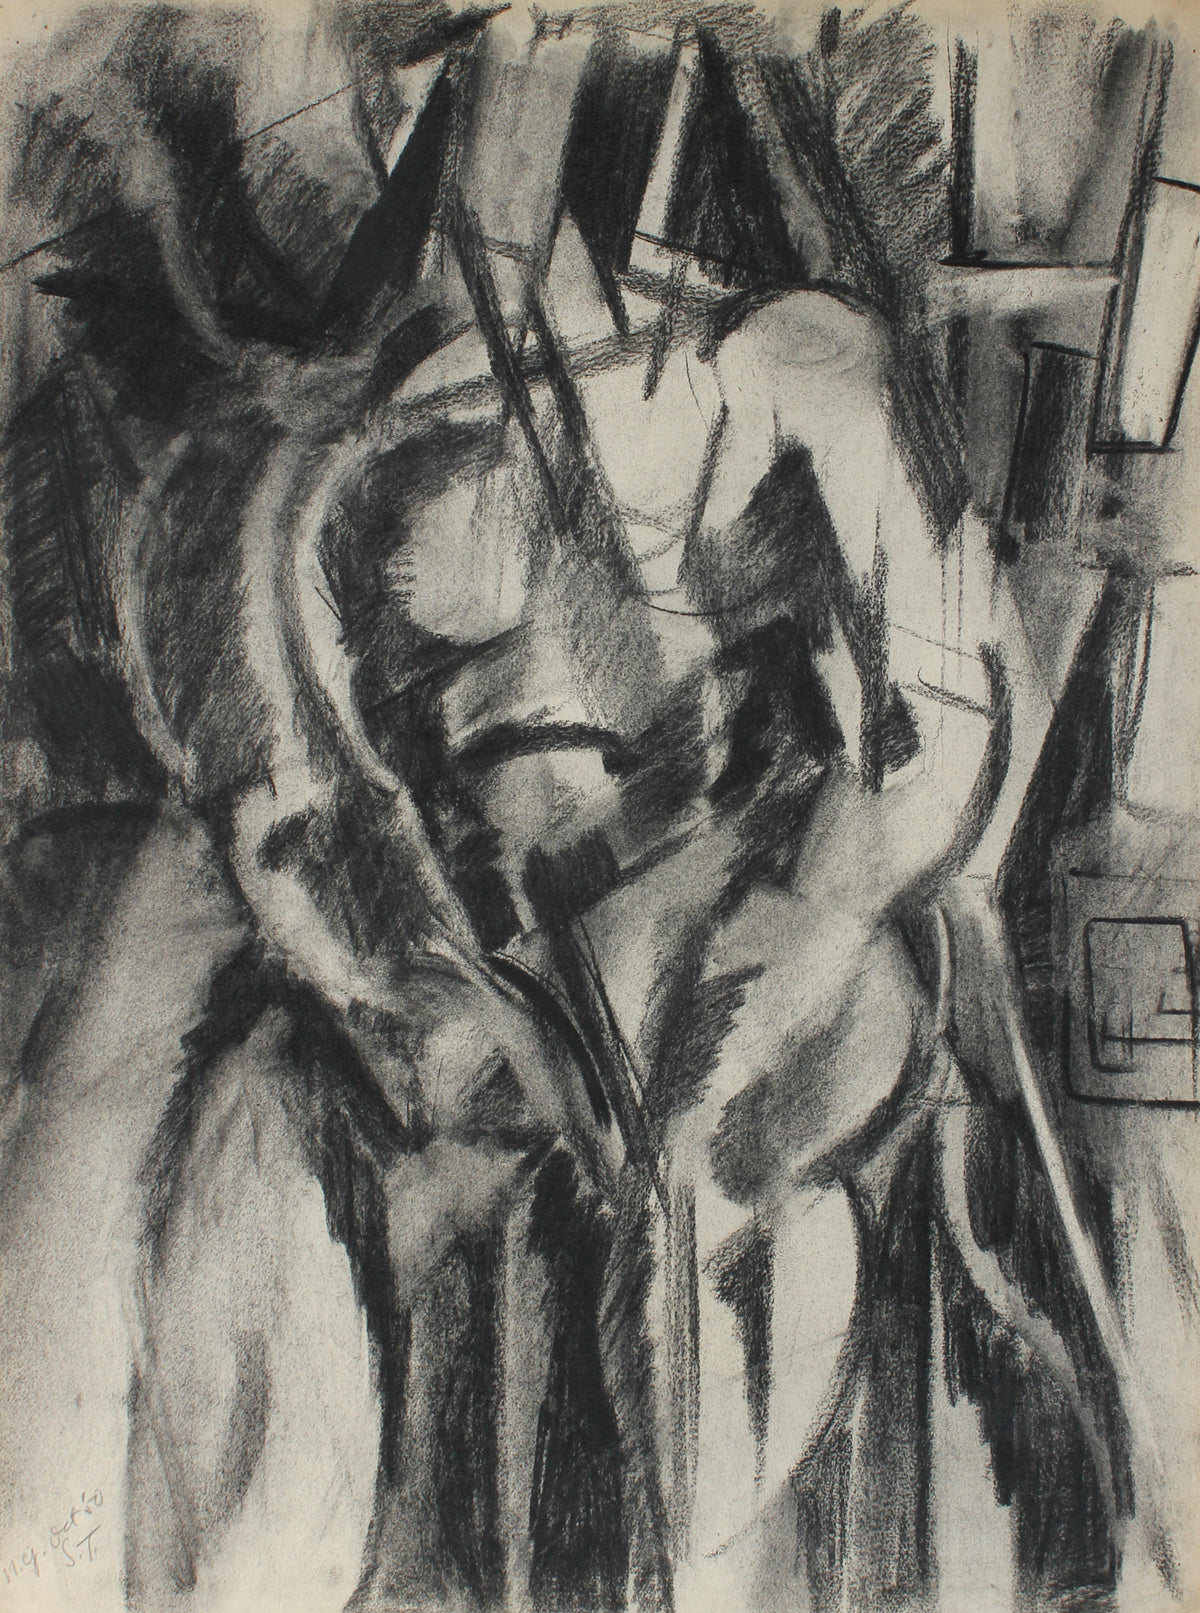 Abstracted Angular Figure&lt;br&gt;October 1950 Charcoal on Paper&lt;br&gt;&lt;br&gt;#66840